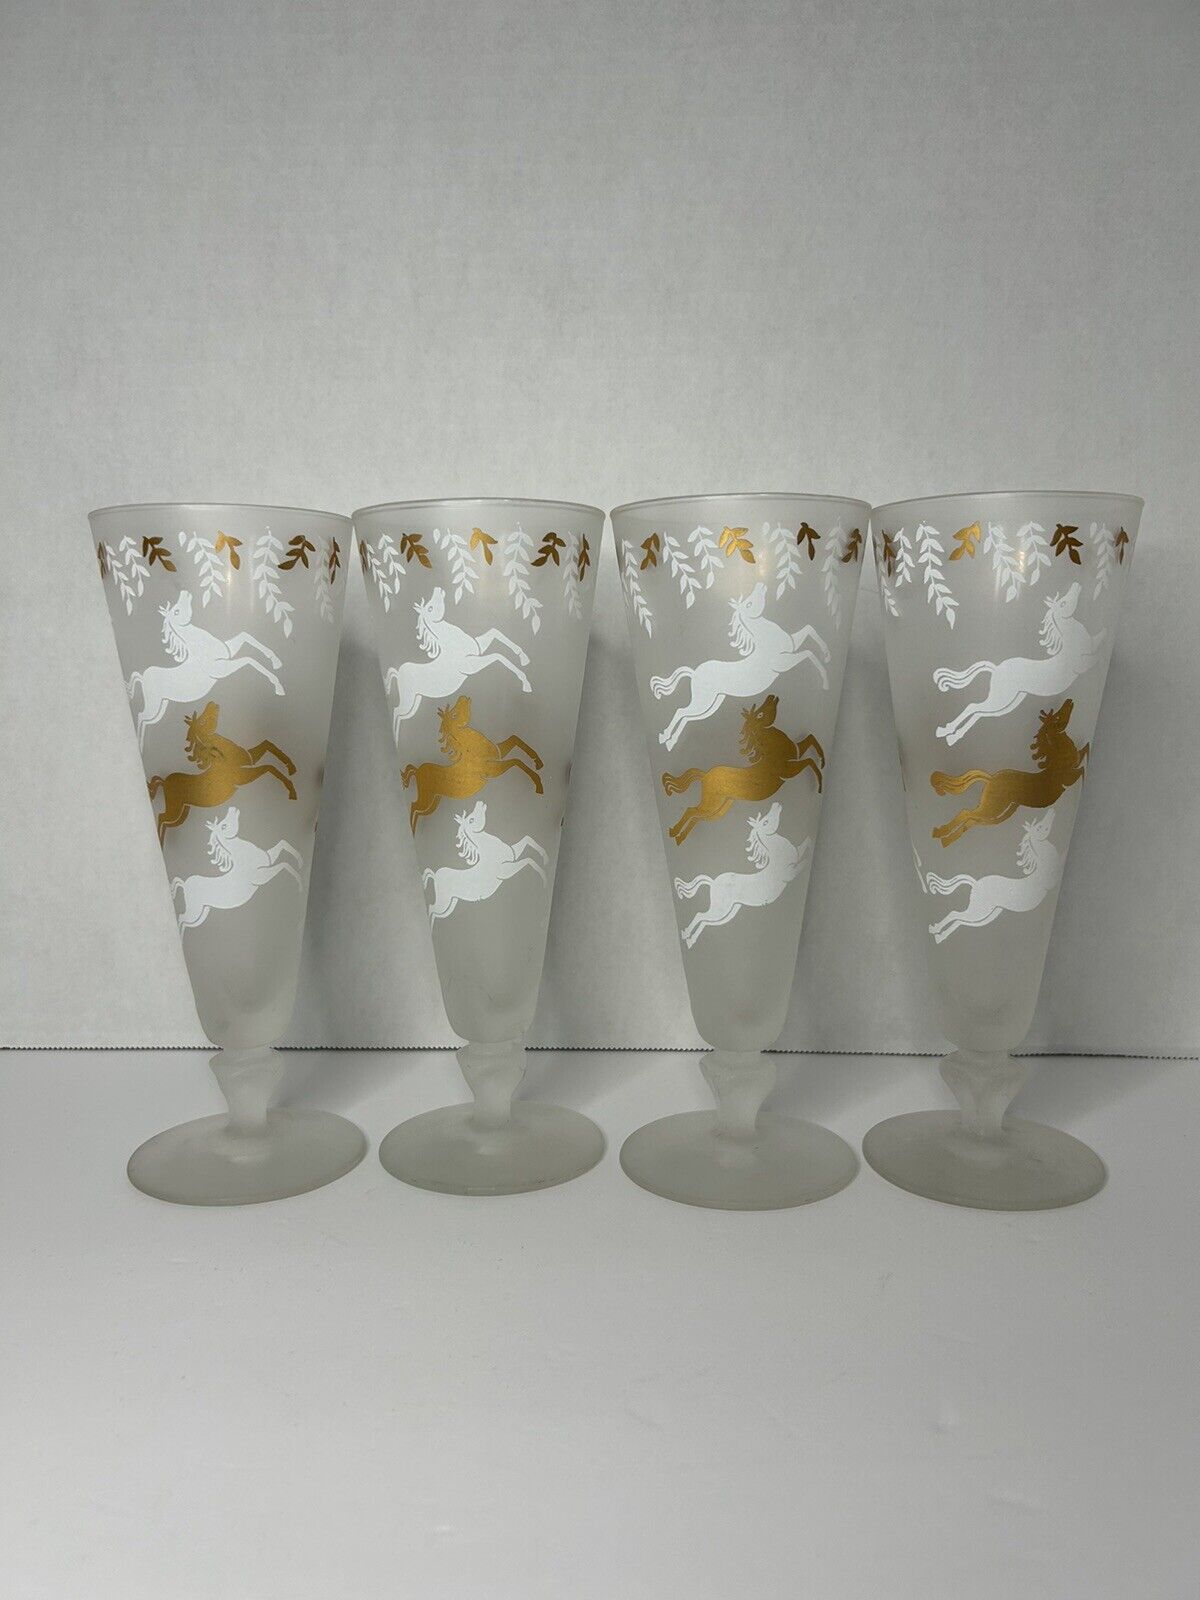 4 Vintage Libbey Cavalcade Frosted Pilsner Pedestal Glasses Horses MCM